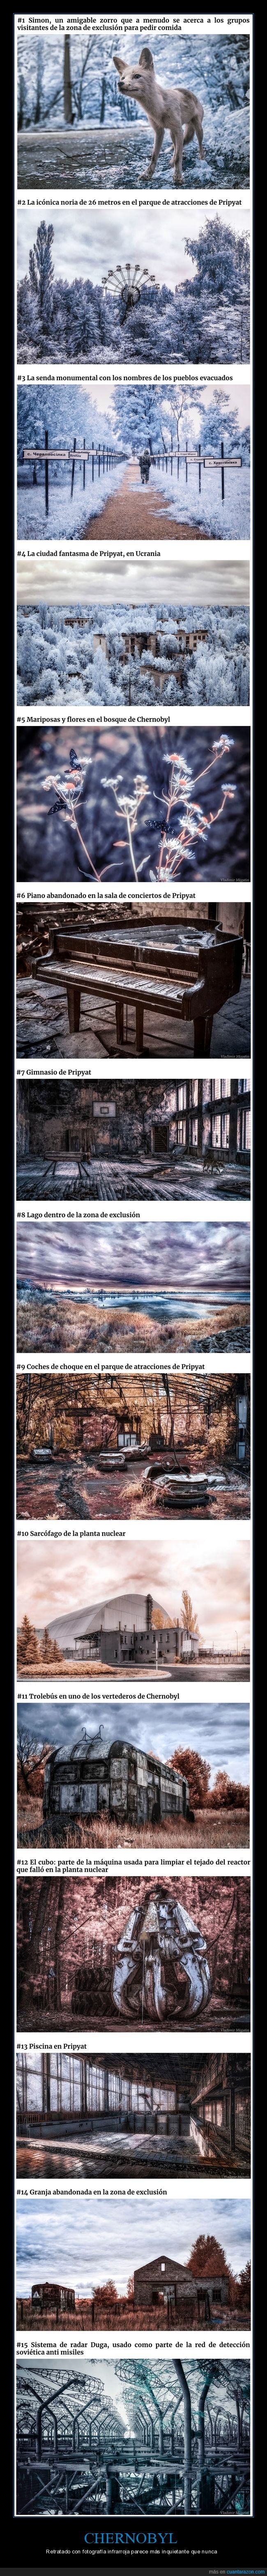 chernobyl,fotografía,infrarroja